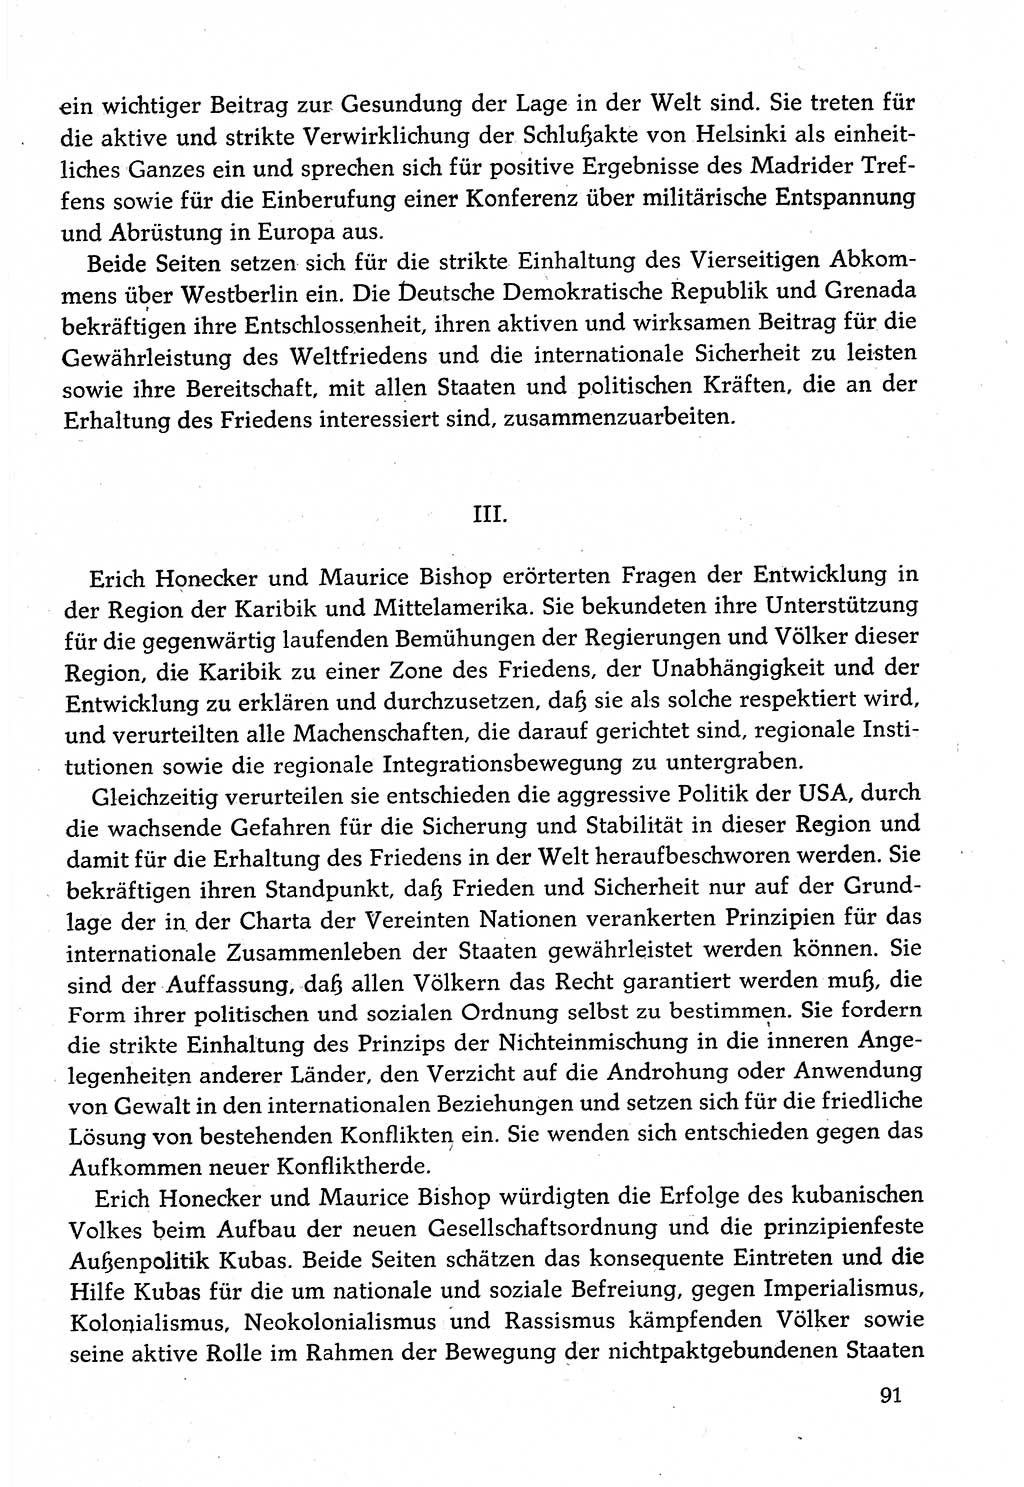 Dokumente der Sozialistischen Einheitspartei Deutschlands (SED) [Deutsche Demokratische Republik (DDR)] 1982-1983, Seite 91 (Dok. SED DDR 1982-1983, S. 91)